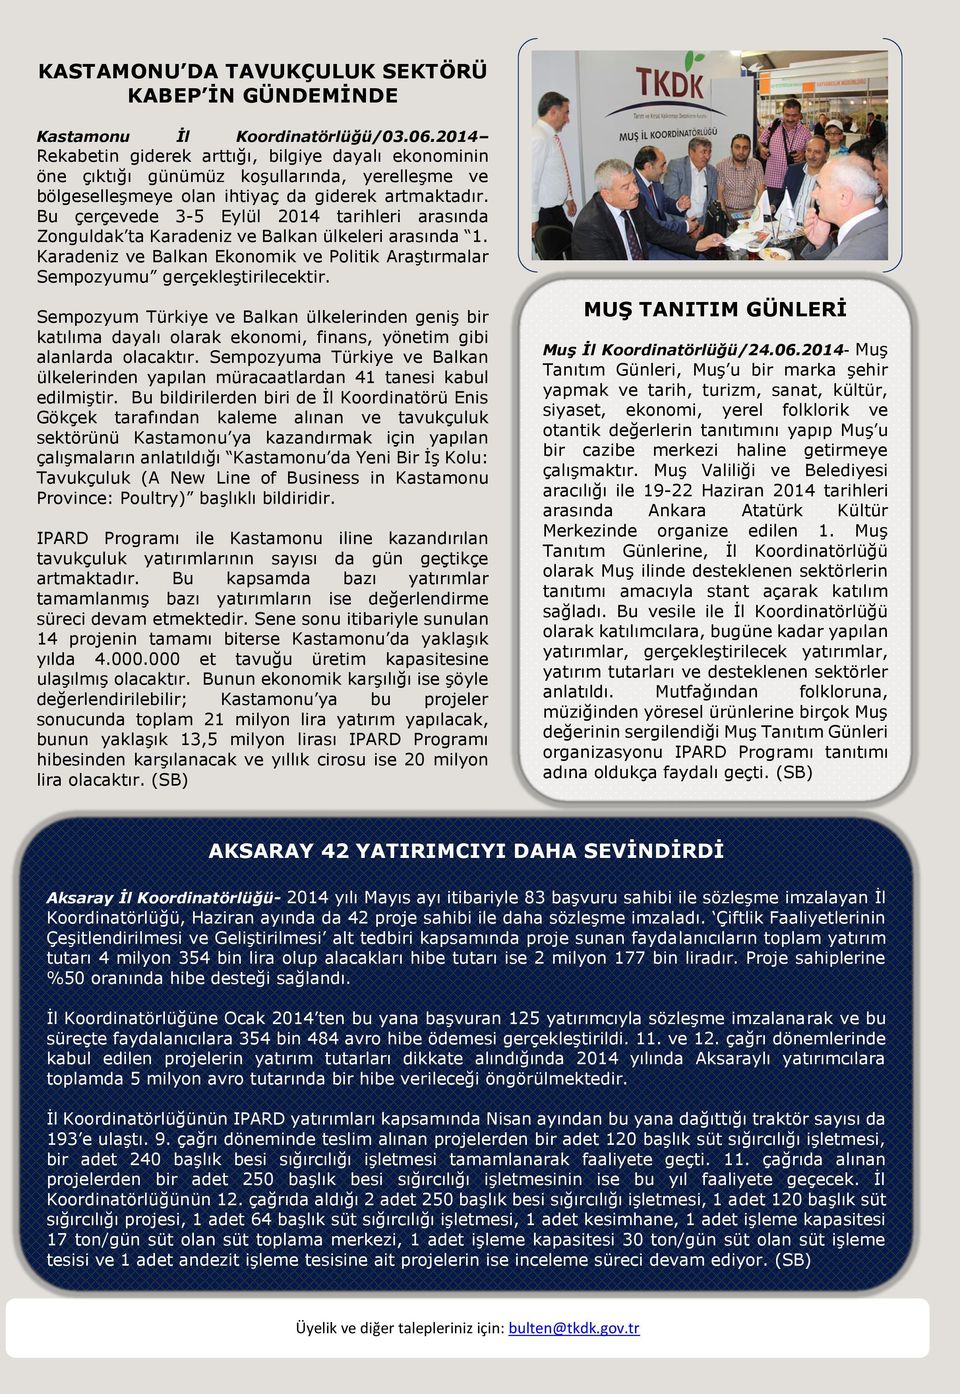 Bu çerçevede 3-5 Eylül 2014 tarihleri arasında Zonguldak ta Karadeniz ve Balkan ülkeleri arasında 1. Karadeniz ve Balkan Ekonomik ve Politik Araştırmalar Sempozyumu gerçekleştirilecektir.